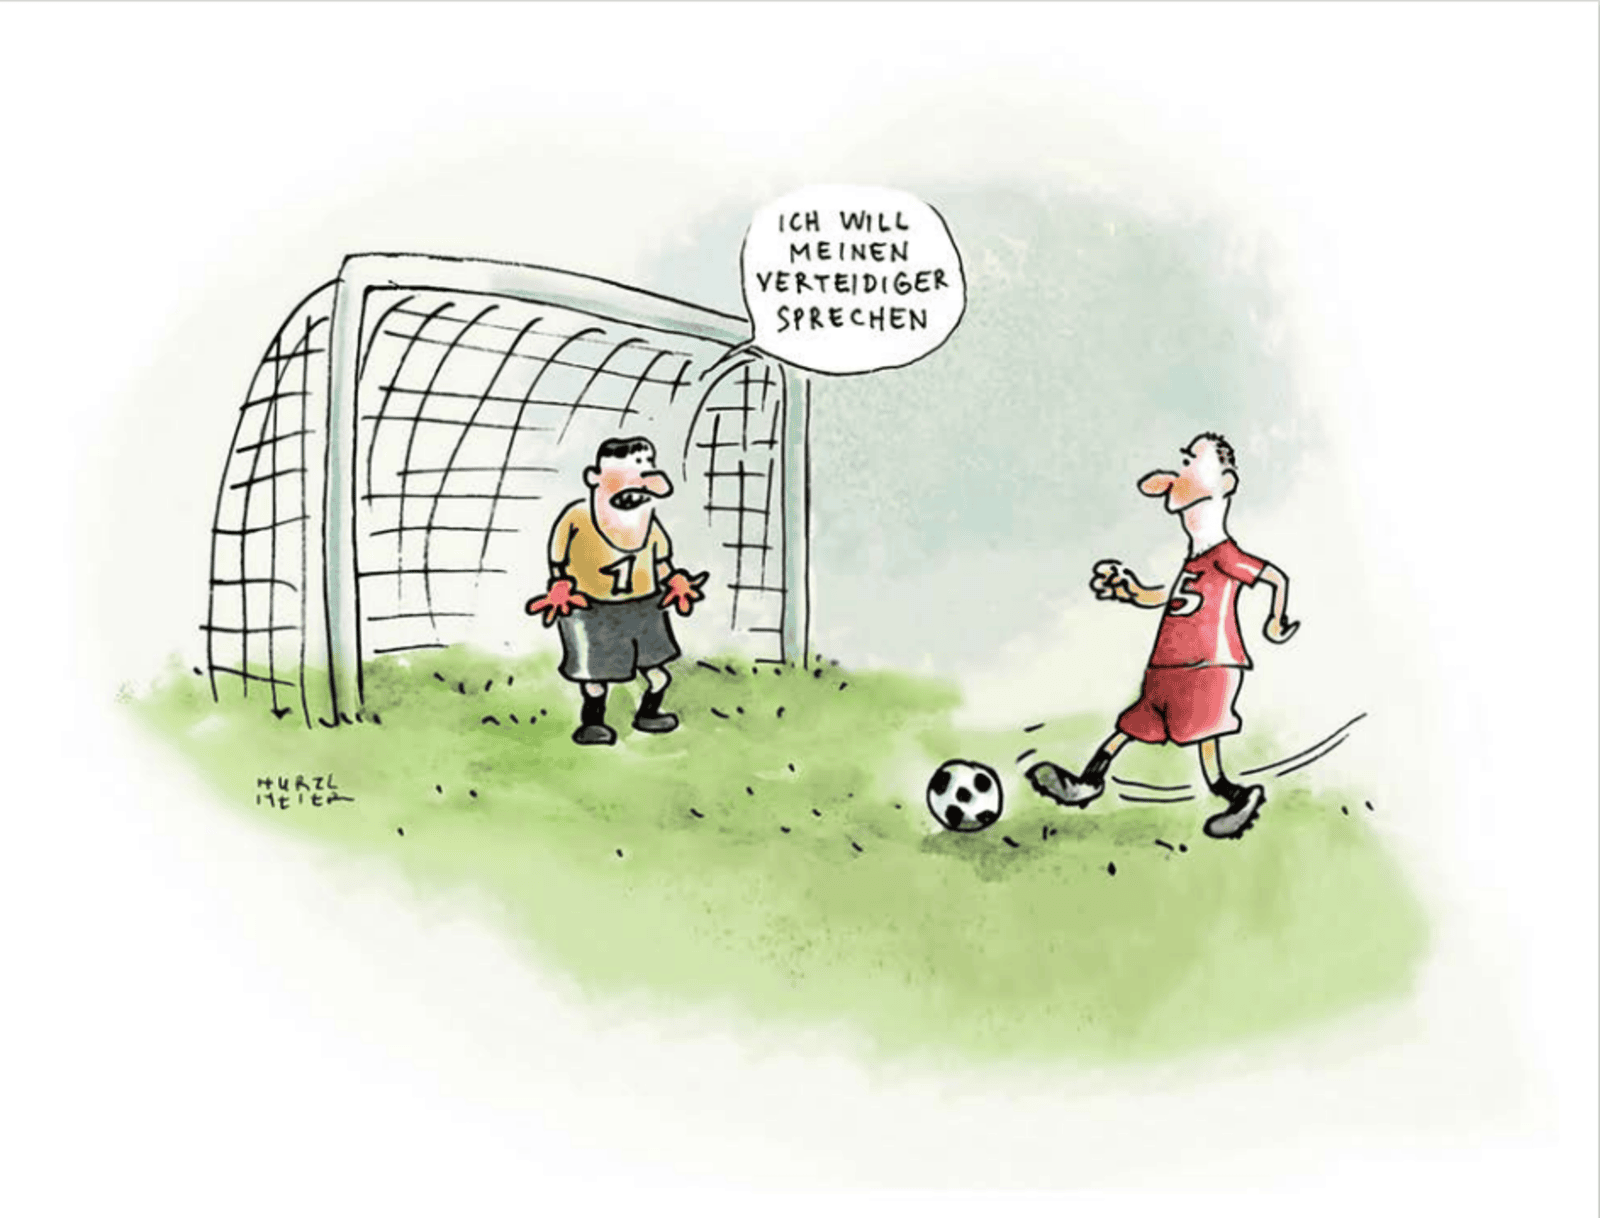 Zu sehen ist eine Fußball-Zeichnung: Ein Fußballspieler steuert einen Ball auf das Tor zu. Der Torwart sagt: "Ich will meinen Verteidiger sprechen".